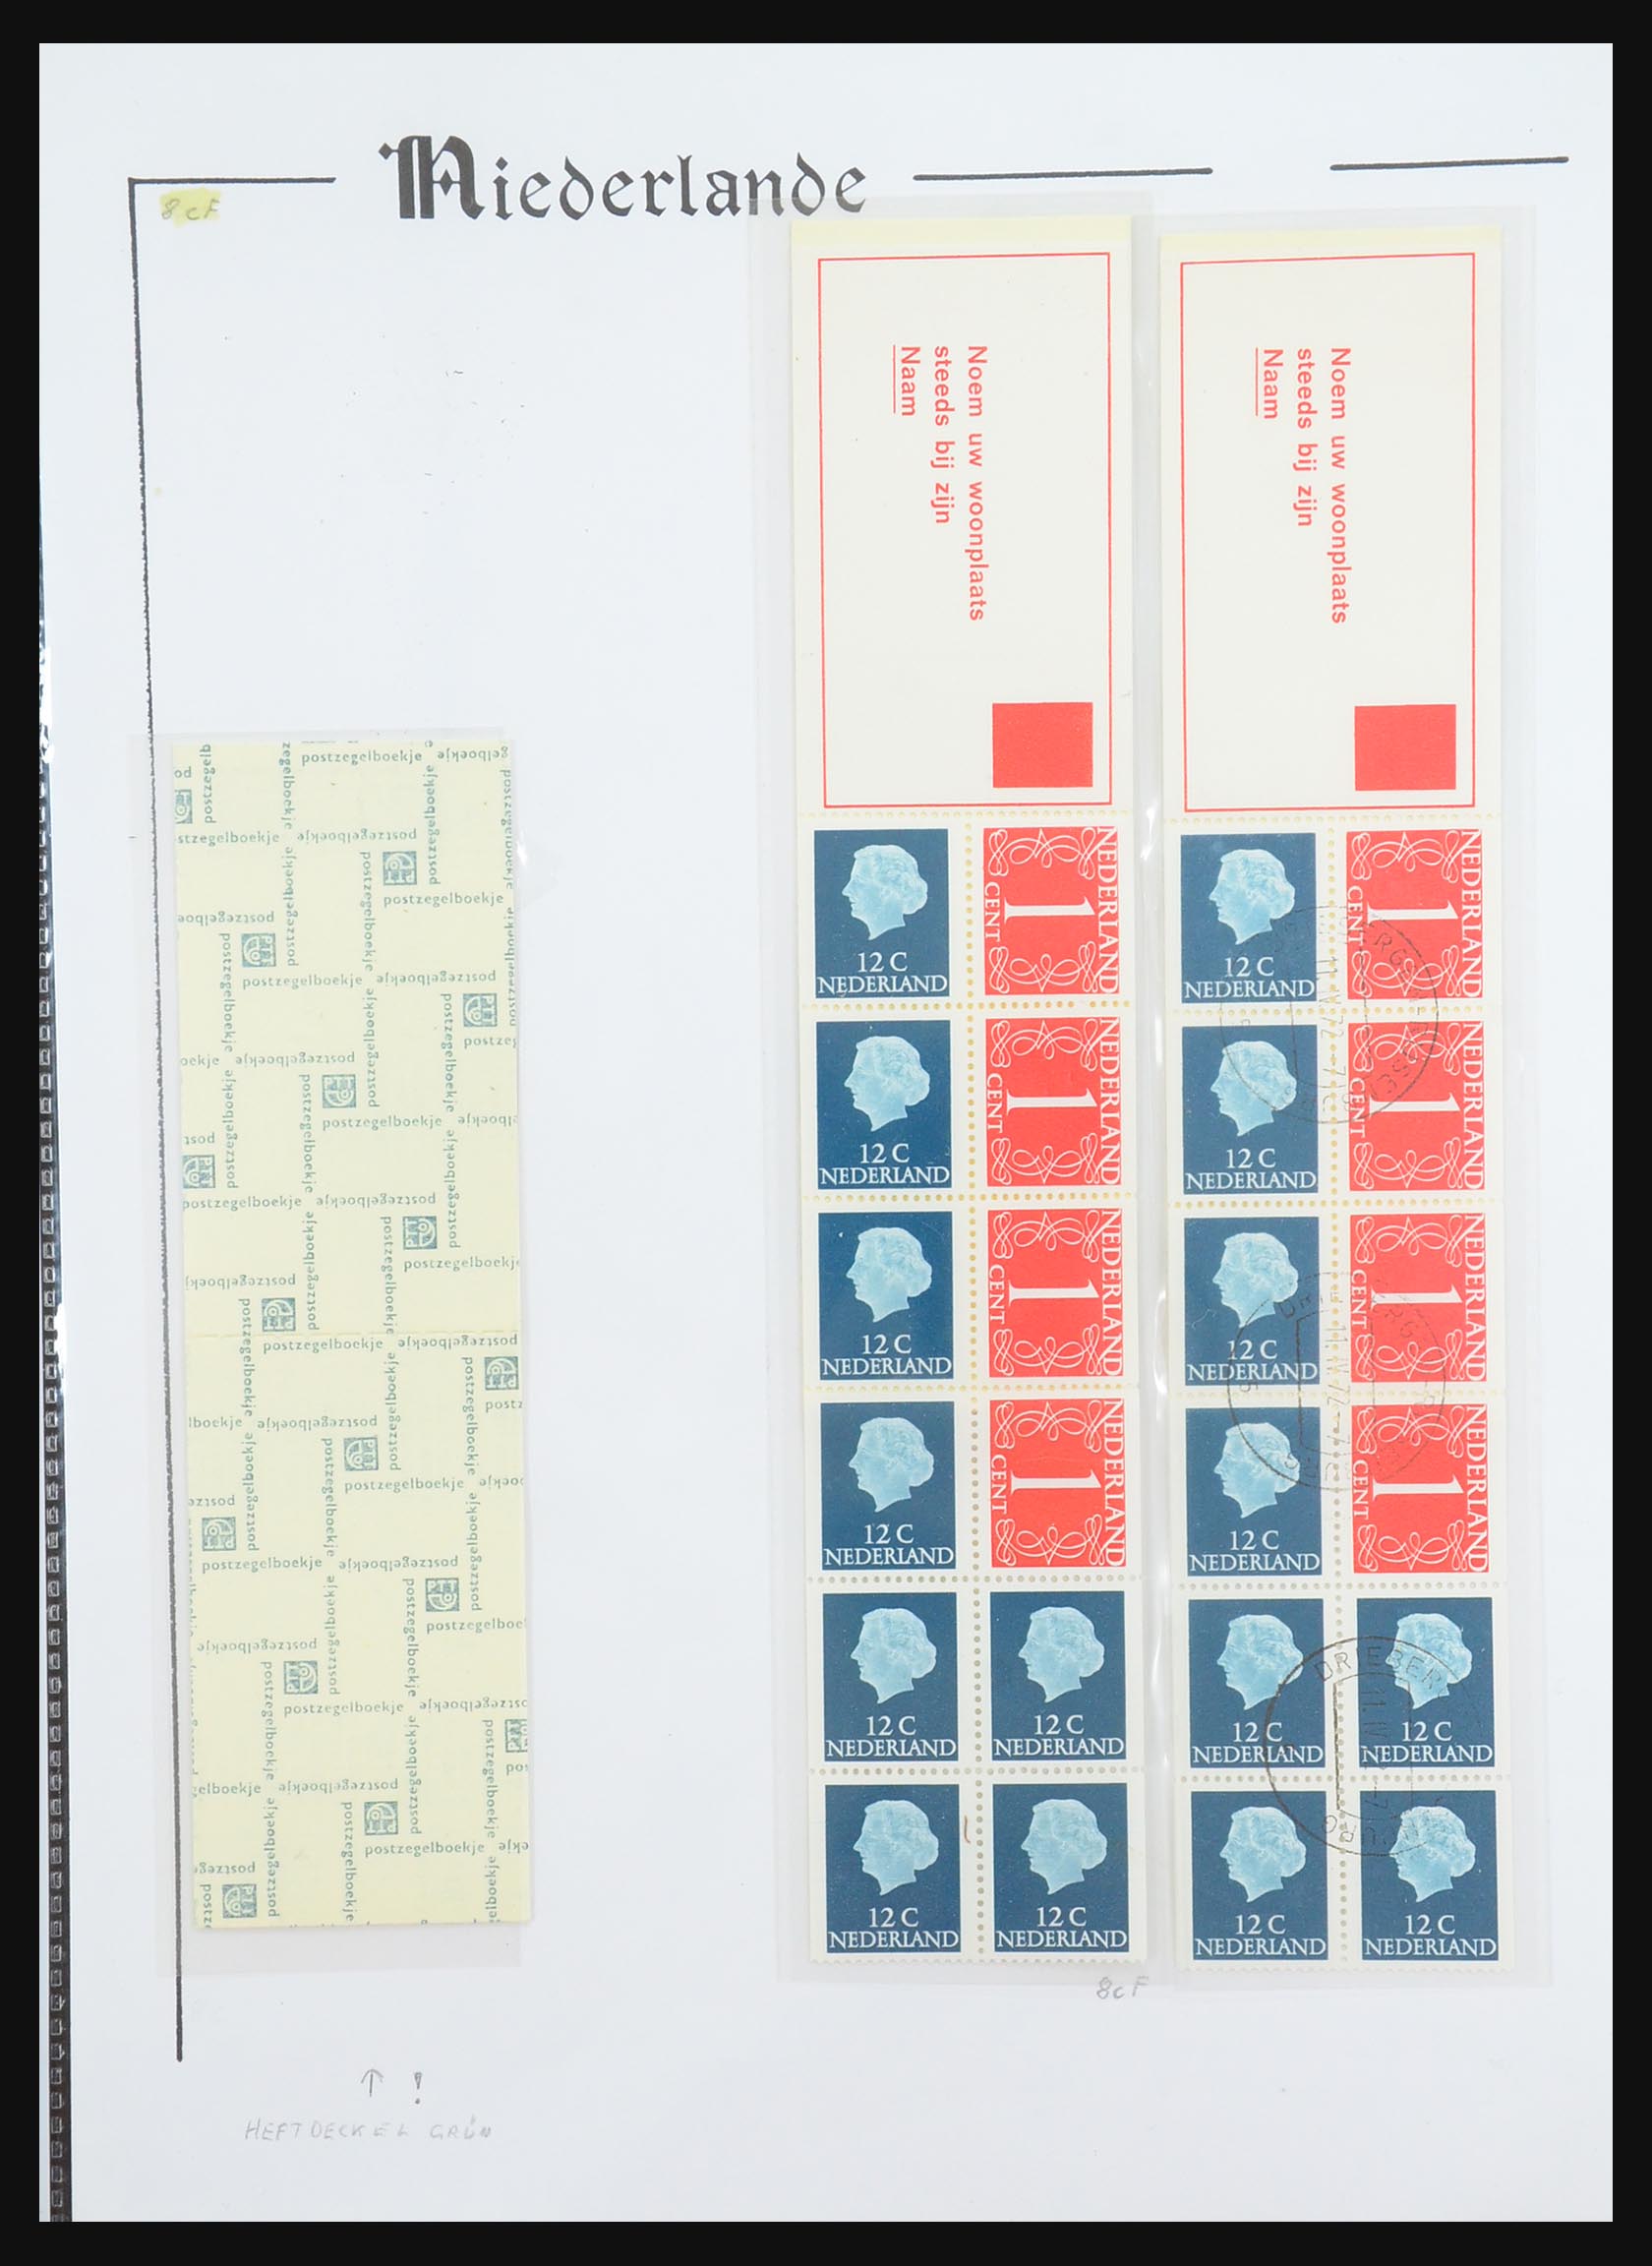 31311 031 - 31311 Netherlands stamp booklets 1964-1994.